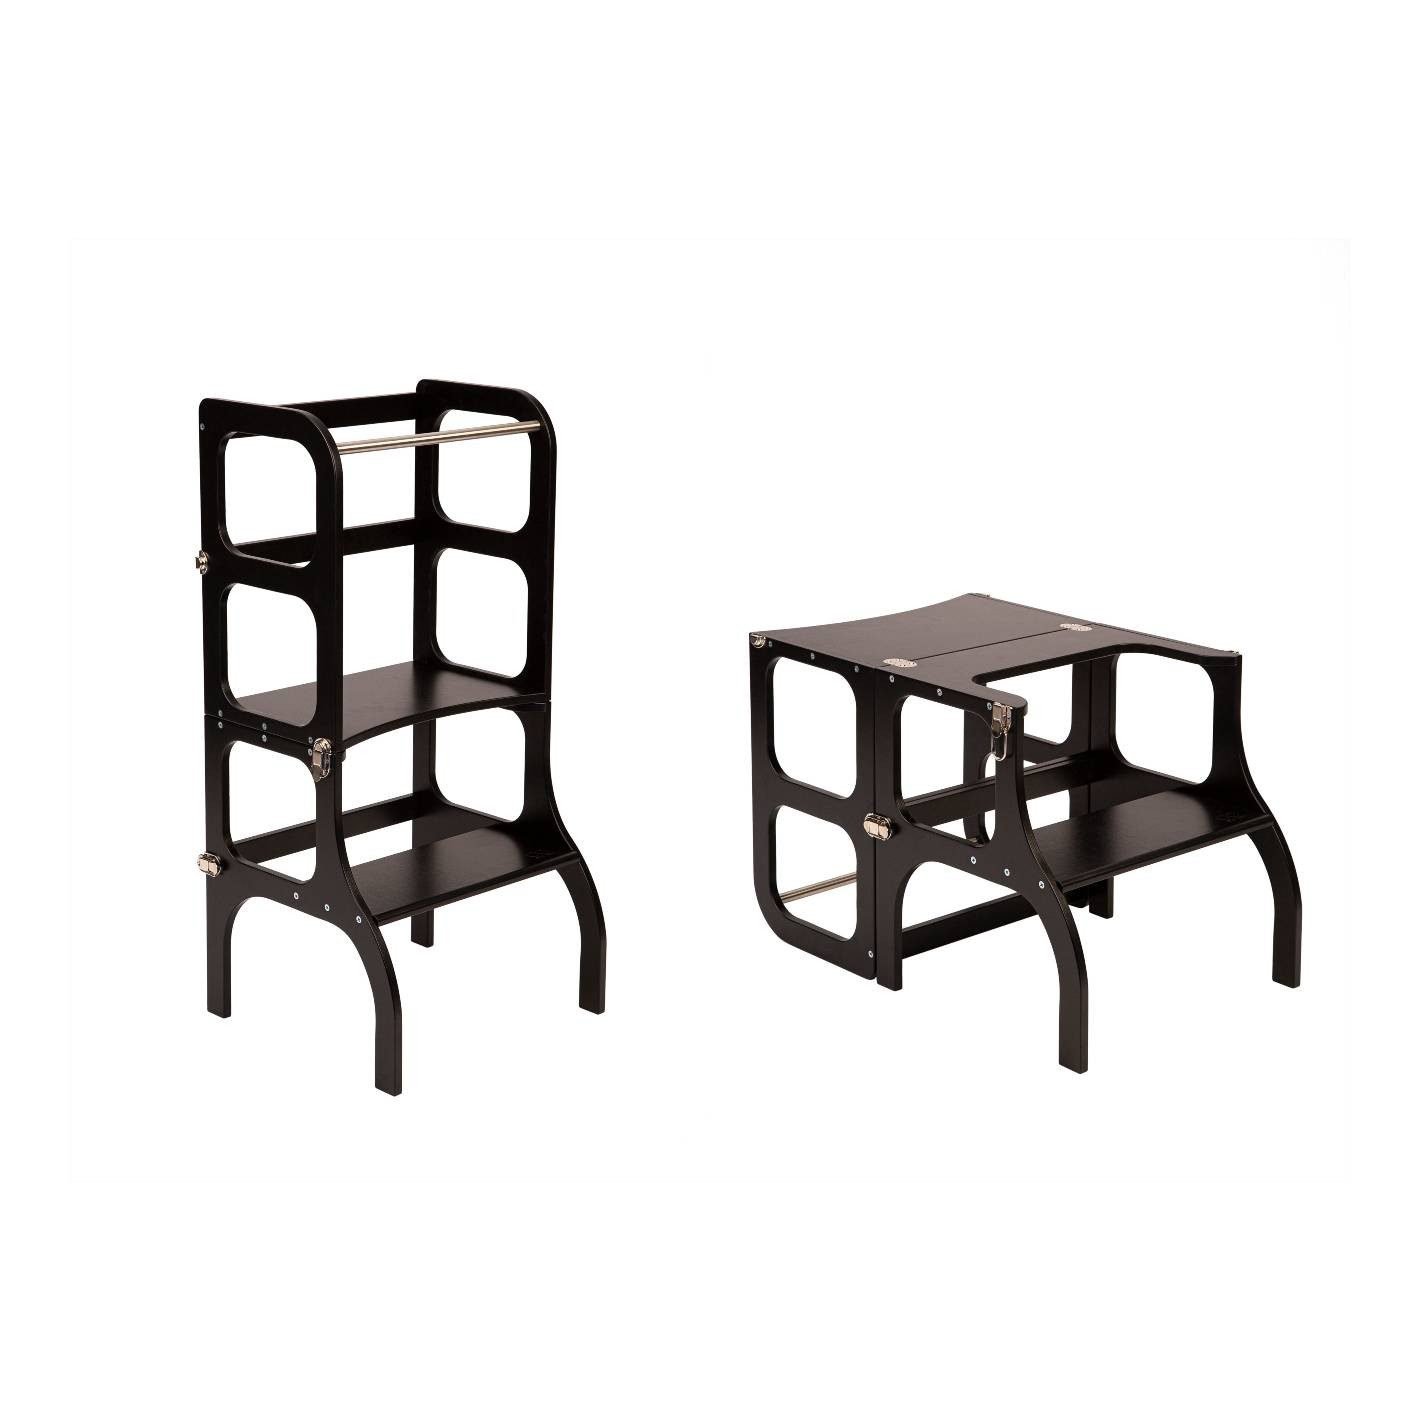 Mediniai pagalbiniai laipteliai - staliukas, juodas su sidabro spalvos segtukais - 1